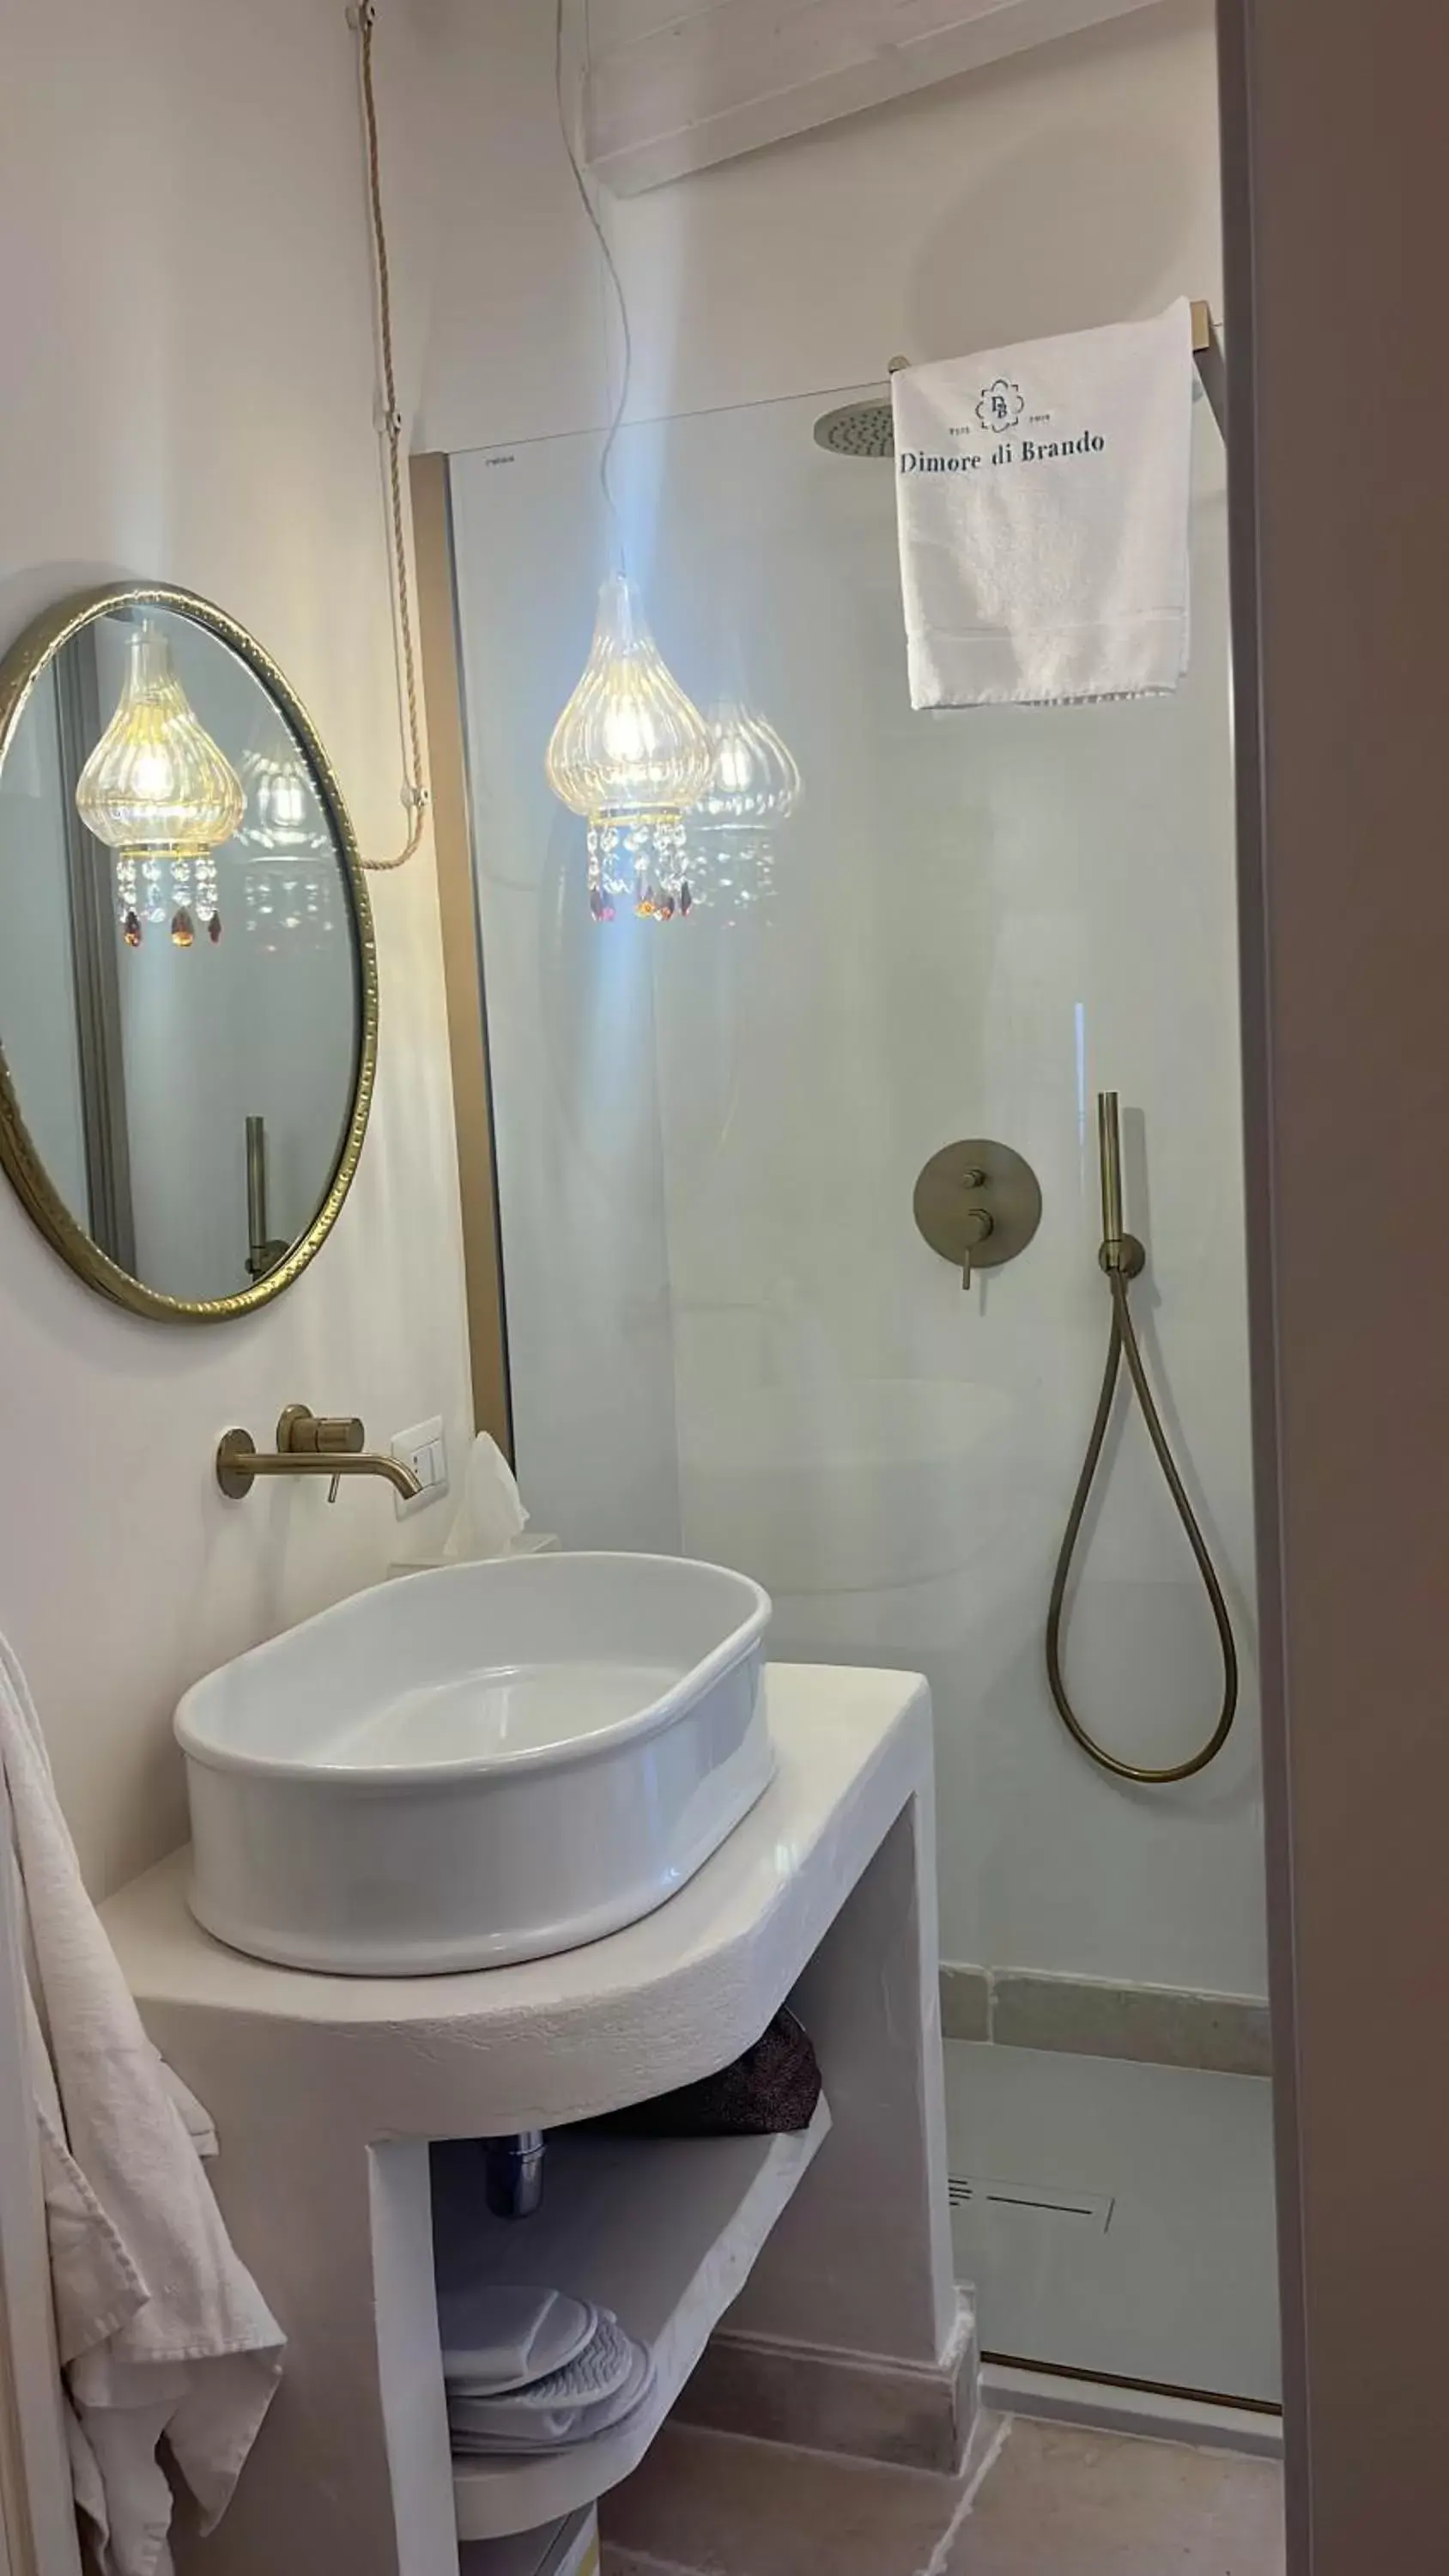 Bathroom in Dimore di Brando Vico Gelso